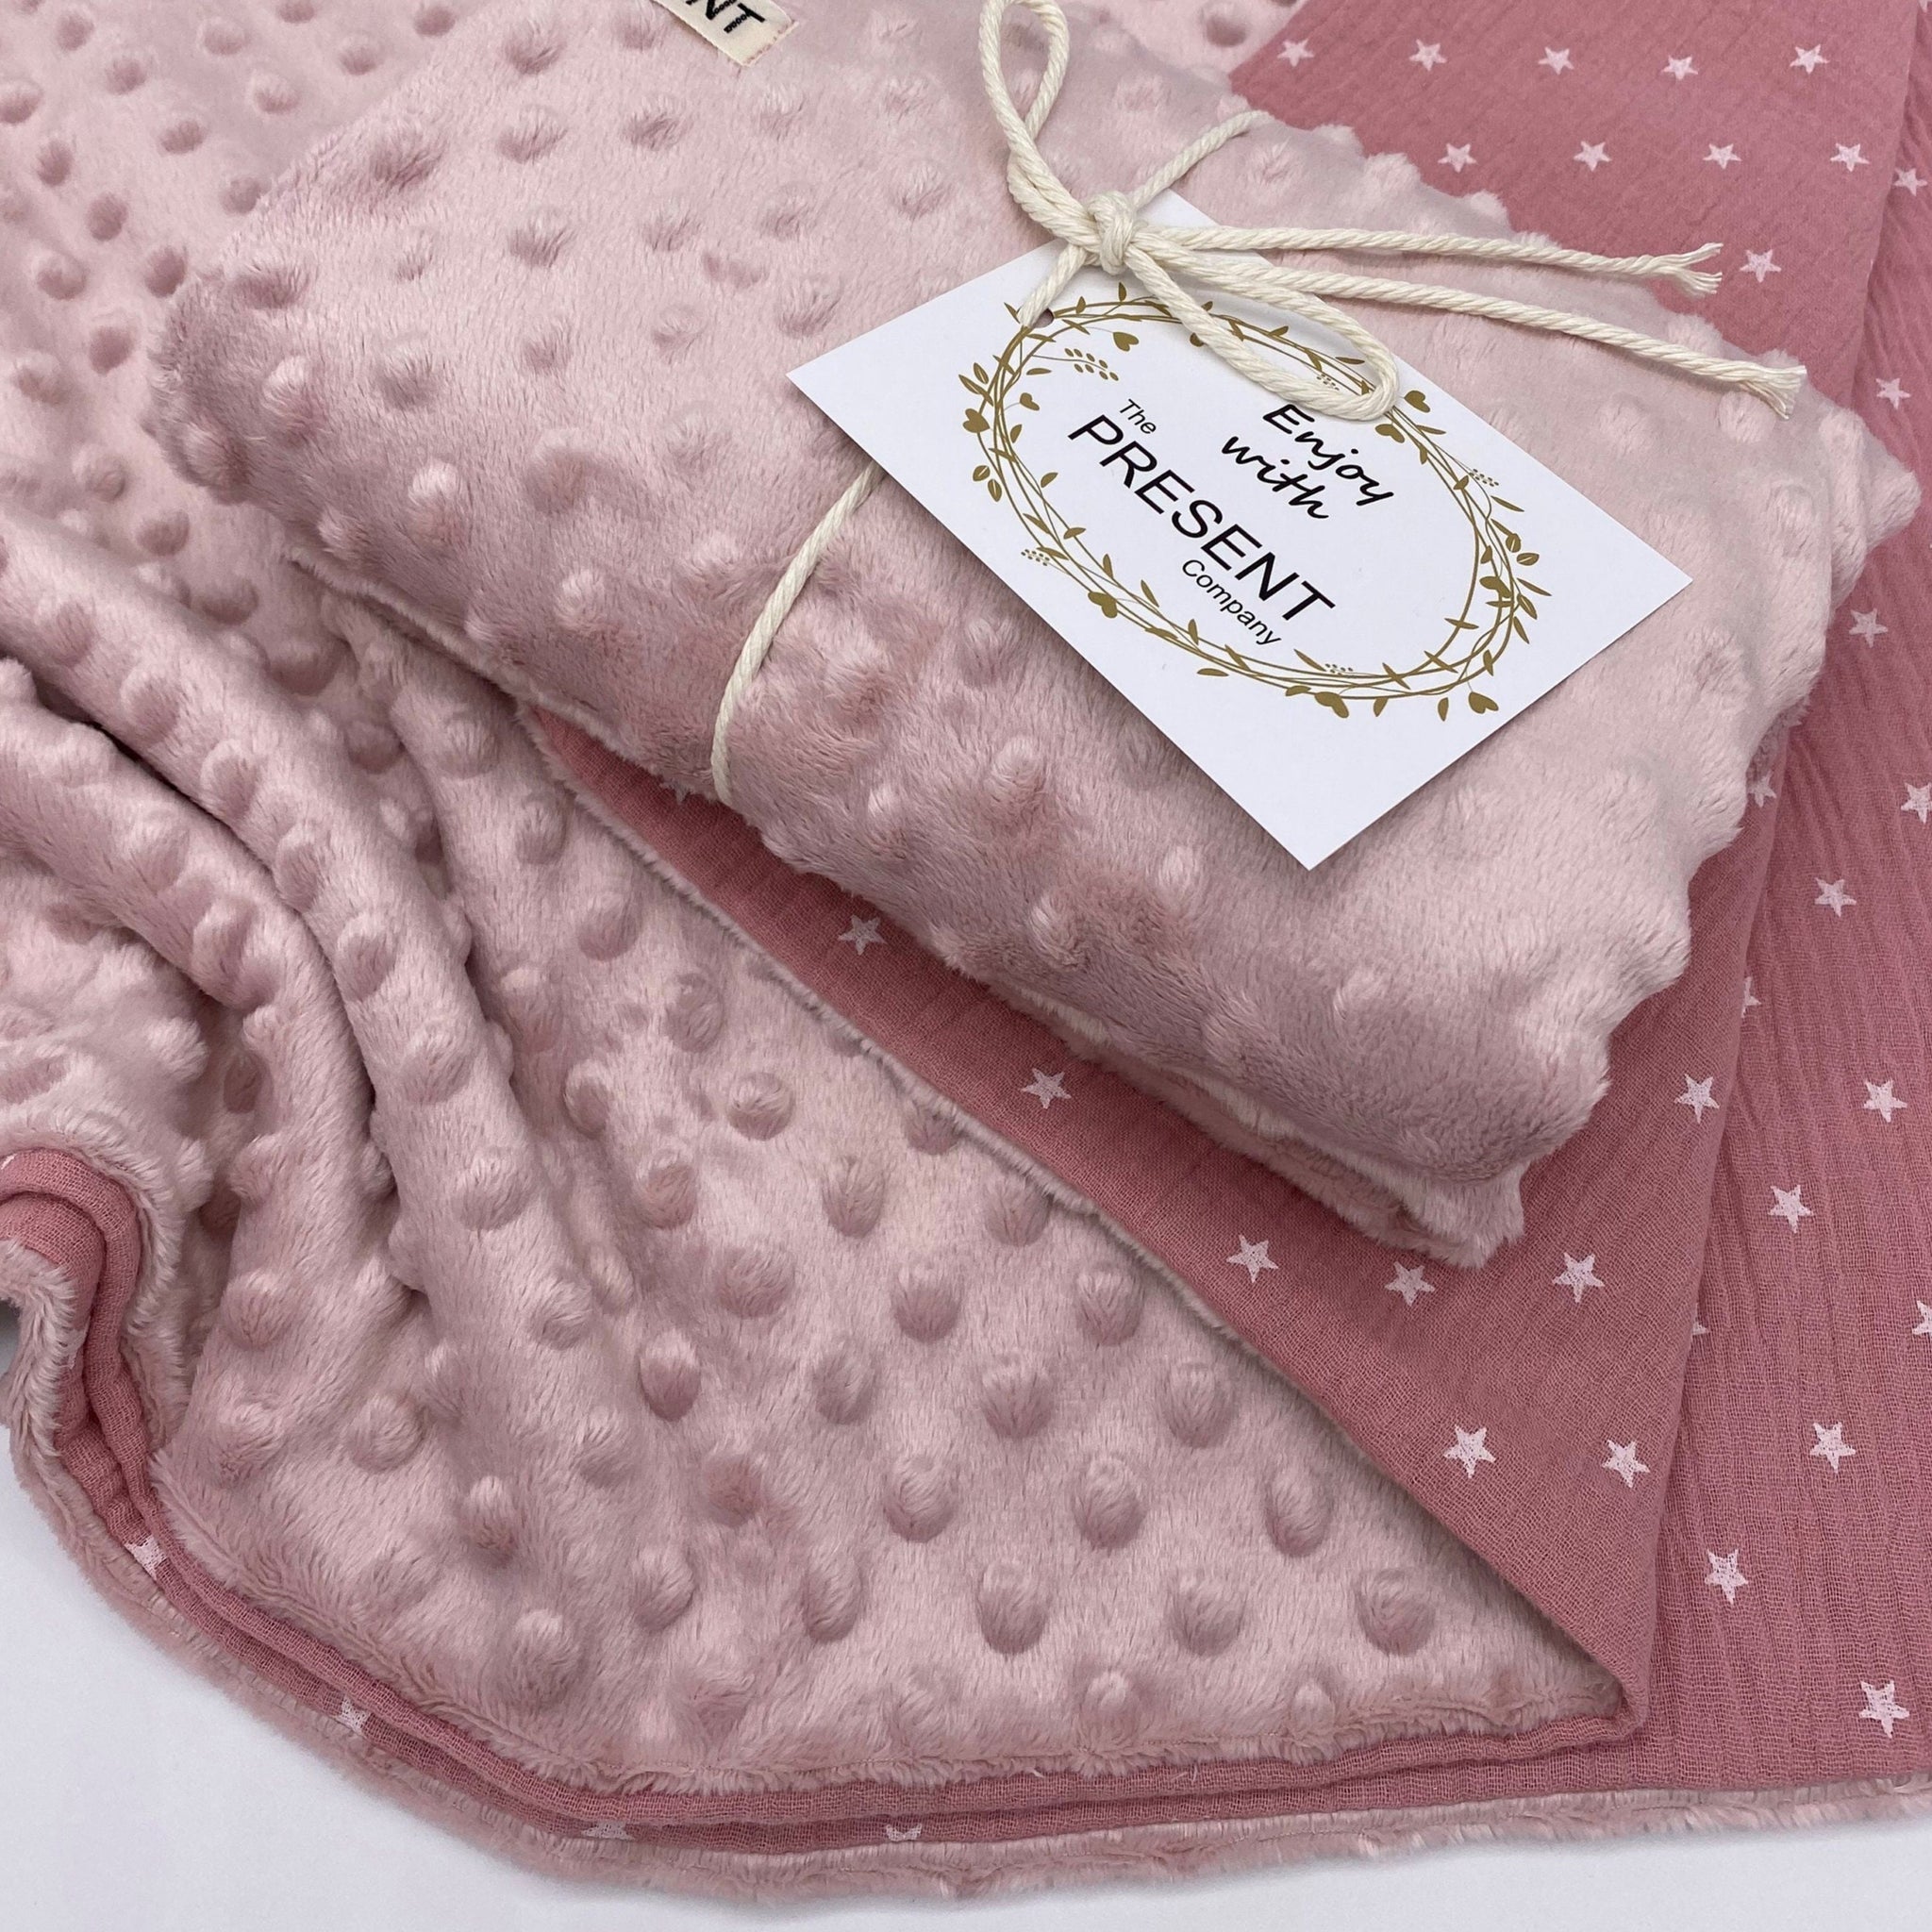 Kuschelweiche Babydecke aus Baumwolle Musselin und Minky Fleece altrosa rosa Kinderwagendecke Baby Geschenk Geburt